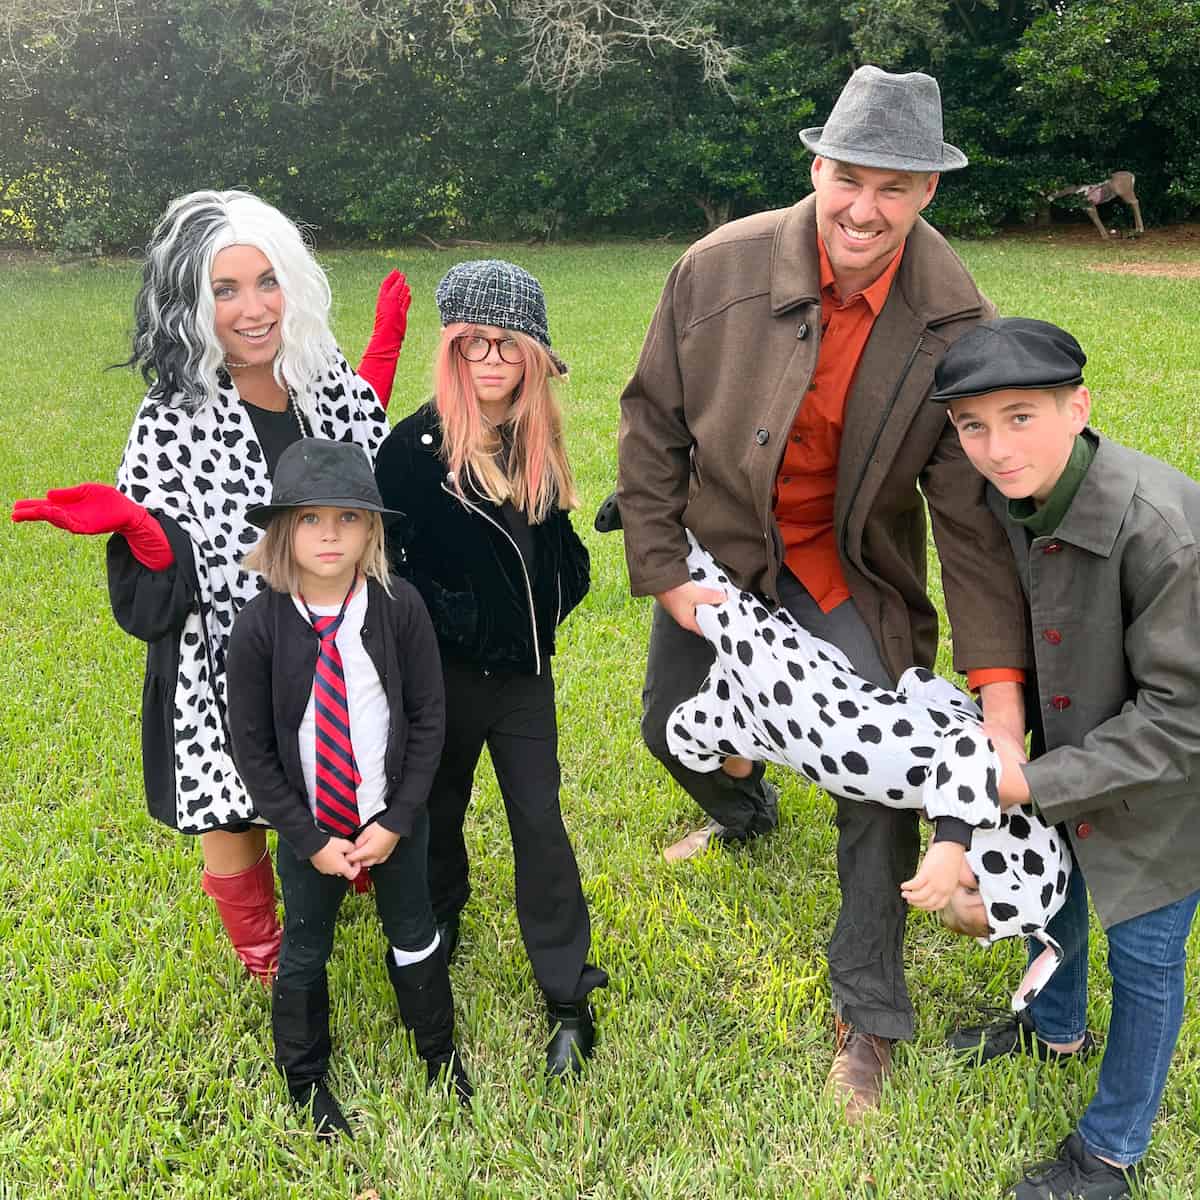 cruella family costumes - 101 dalmatians family costume ideas